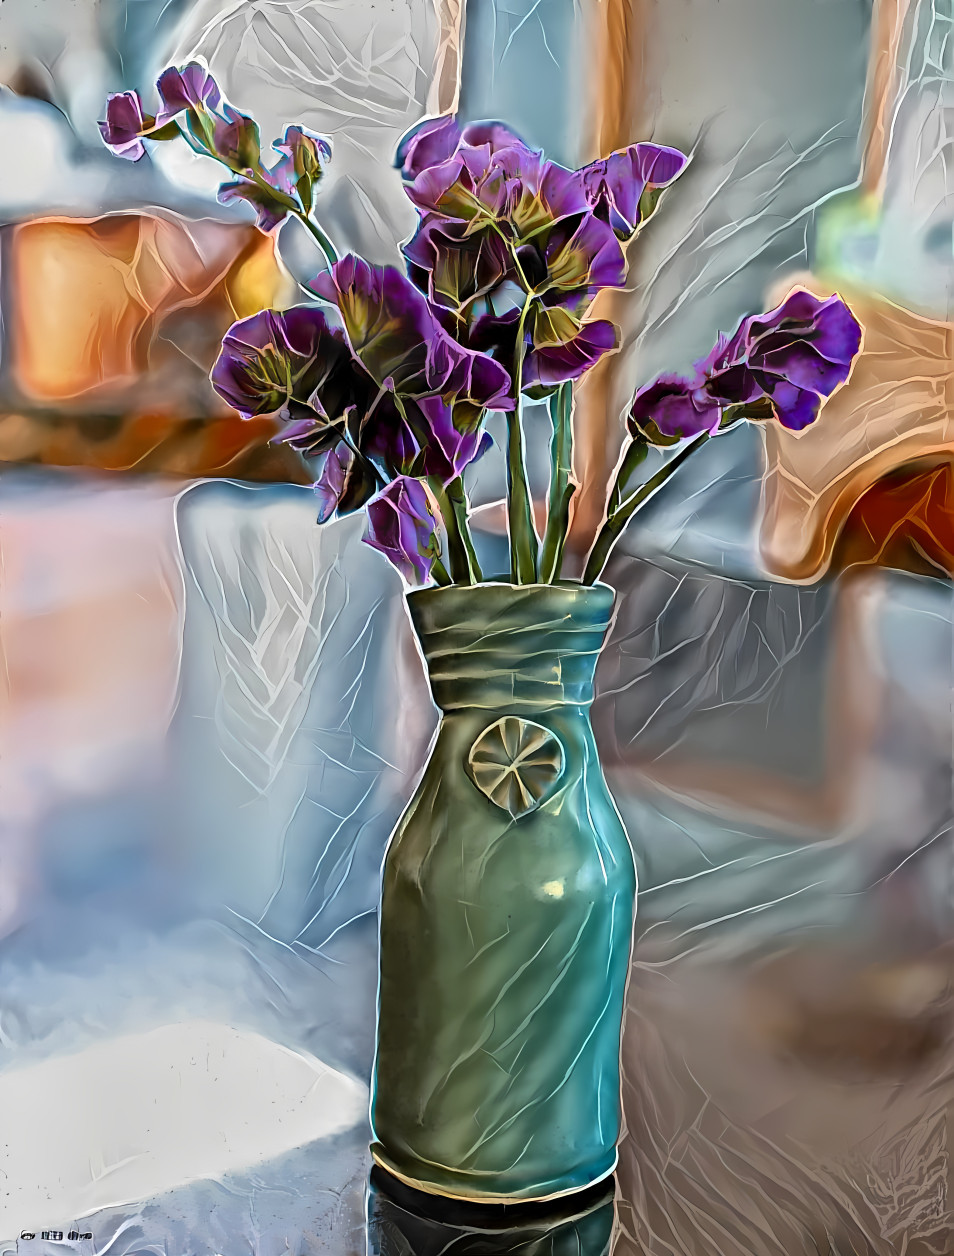 My little pottery vase